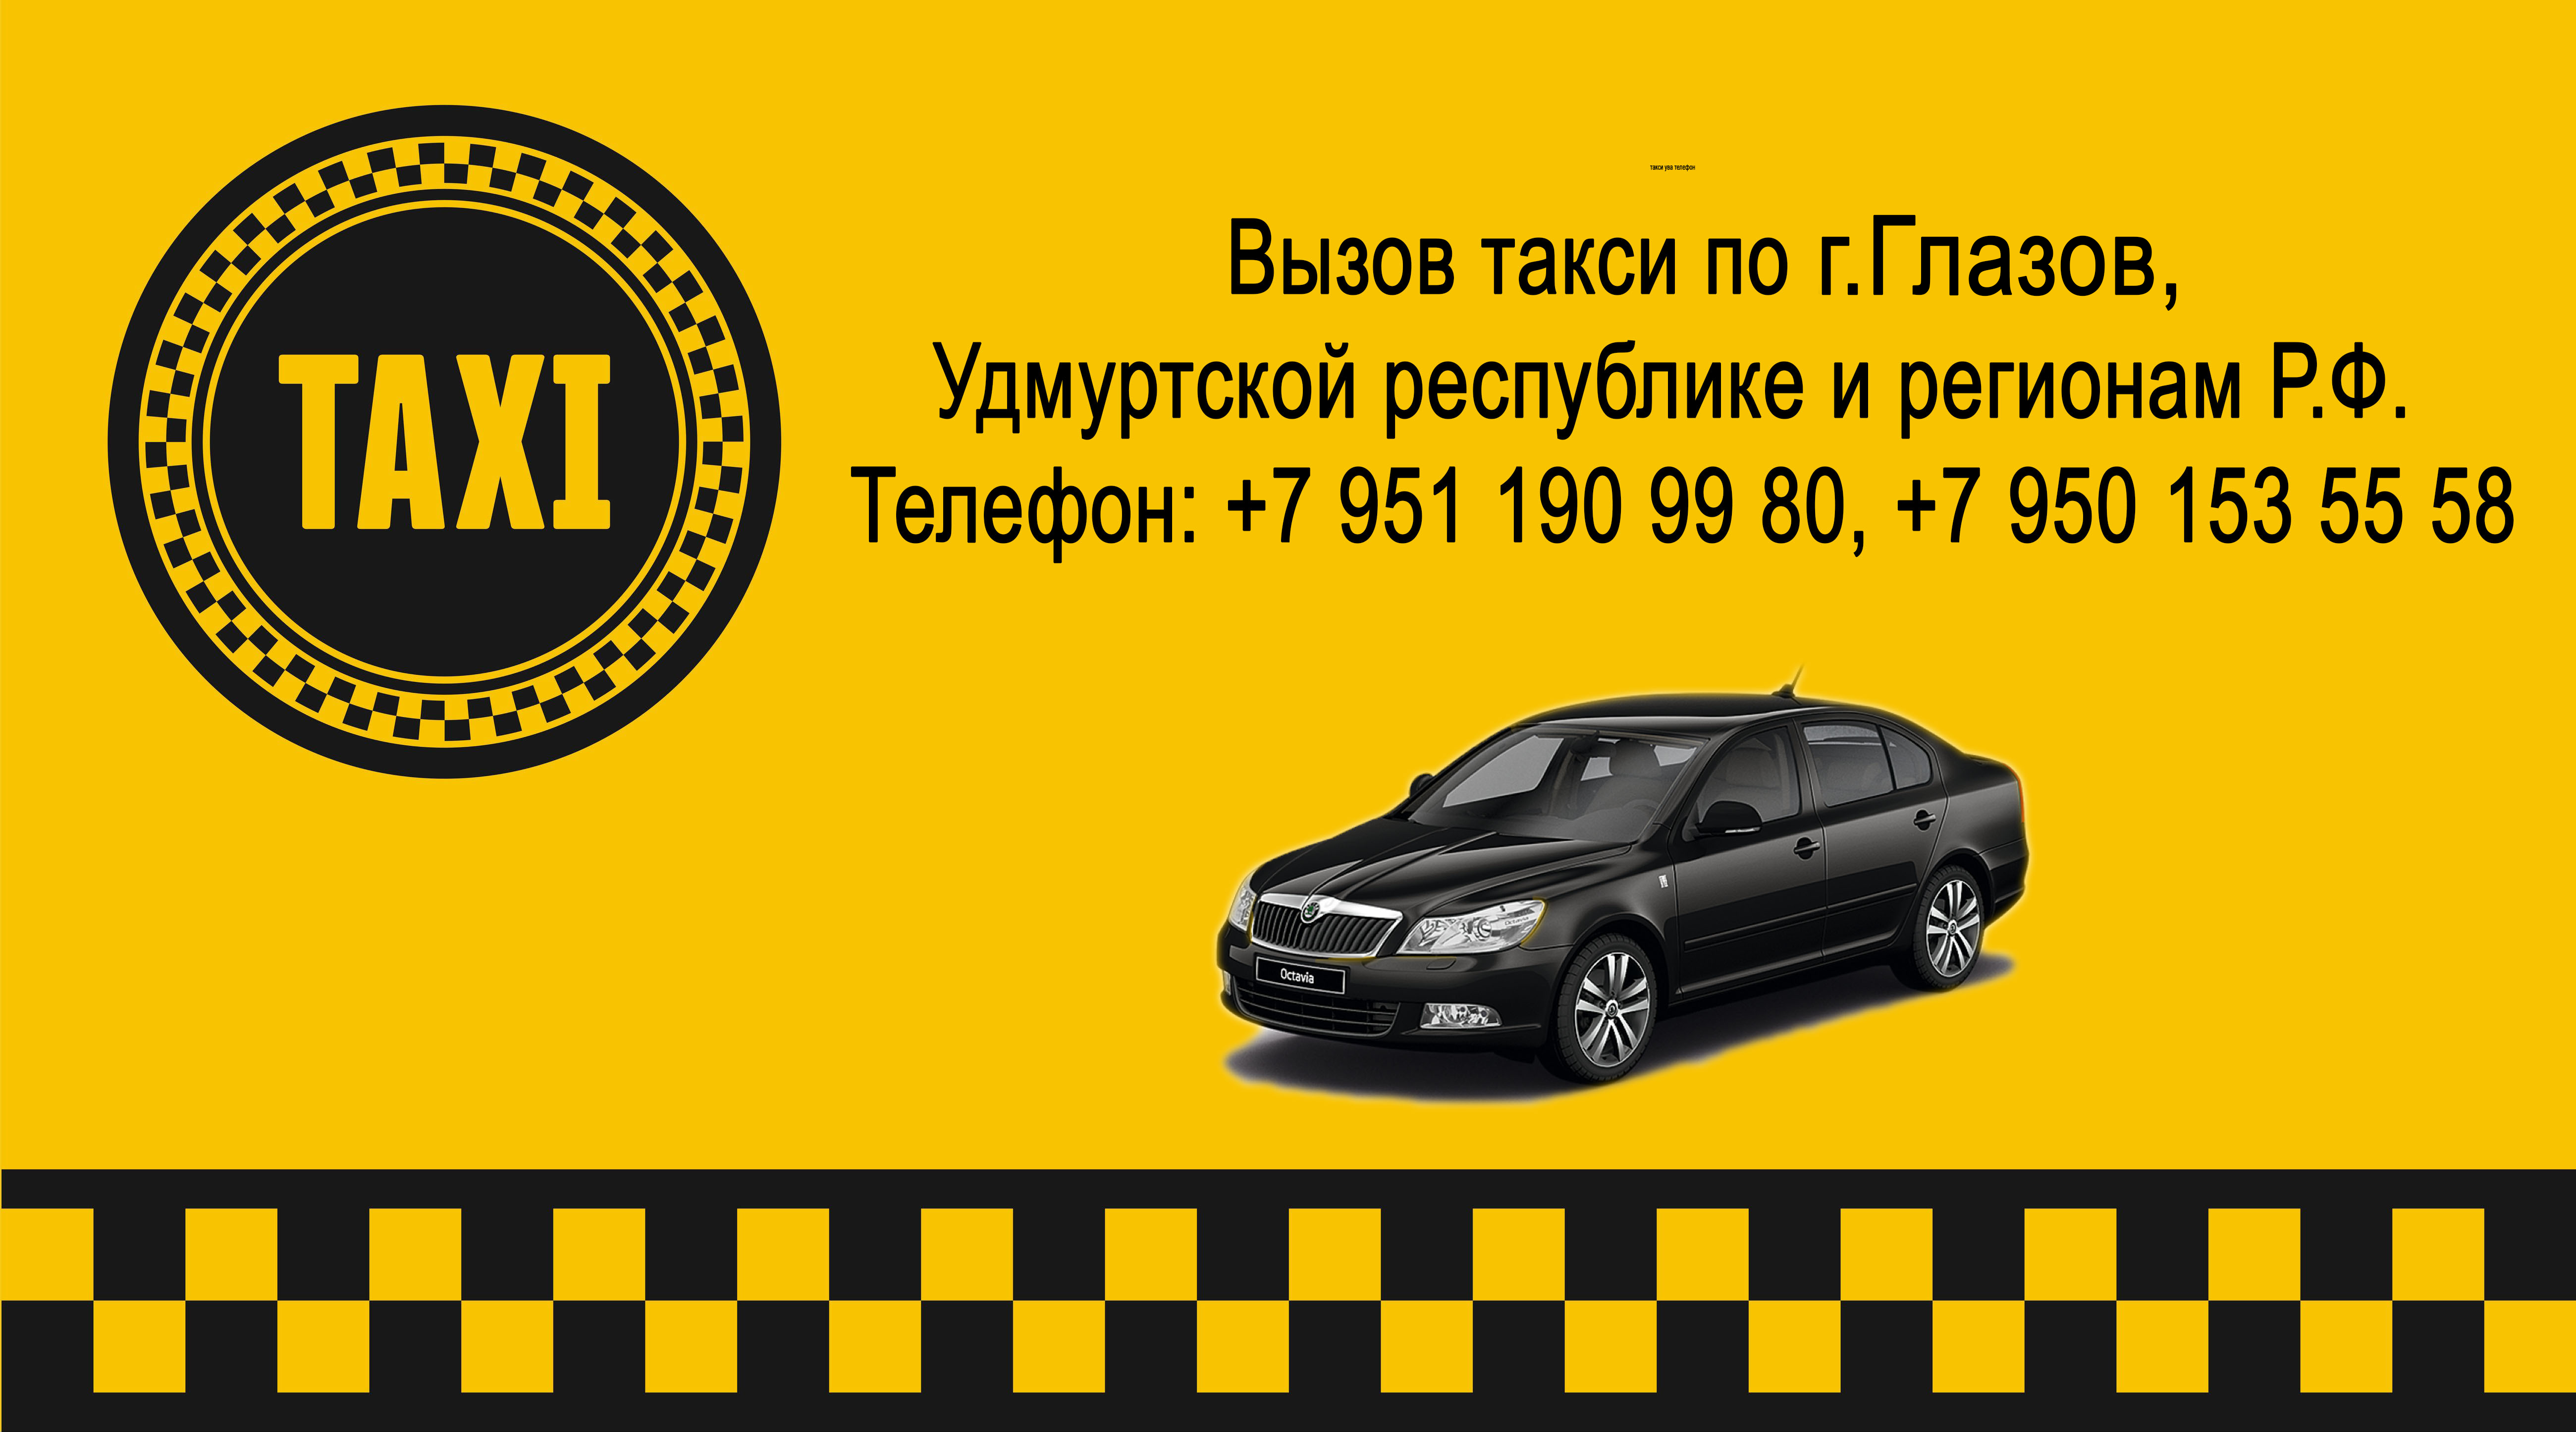 Такси империя в городе златоуст: телефоны, отзывы, карта с адресами и время работы офиса